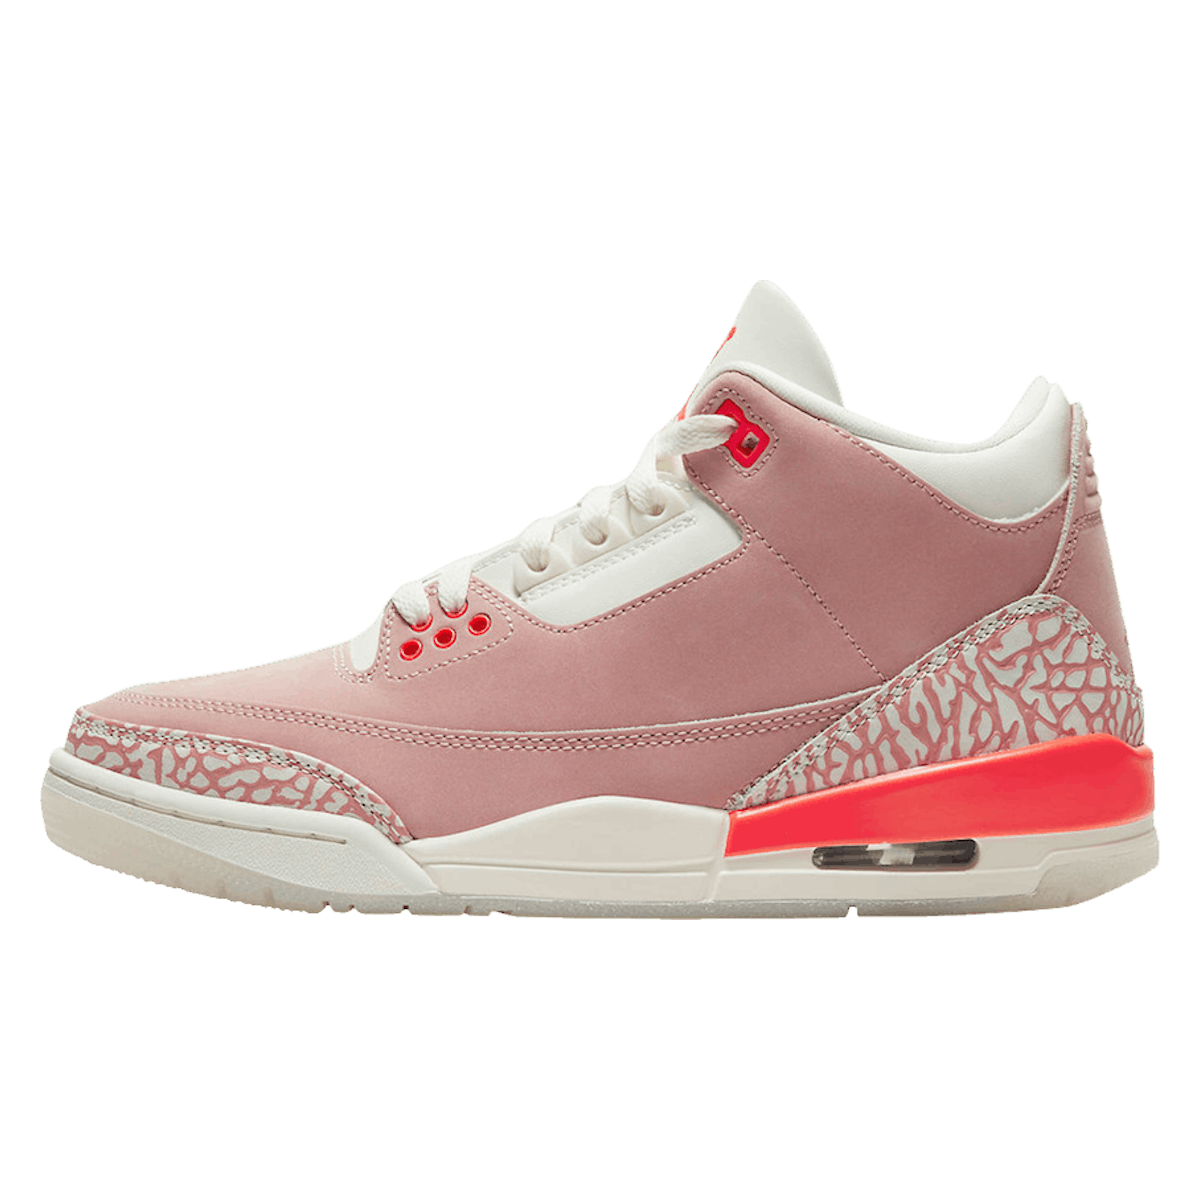 Air Jordan 3 Retro WMNS "Rust Pink"